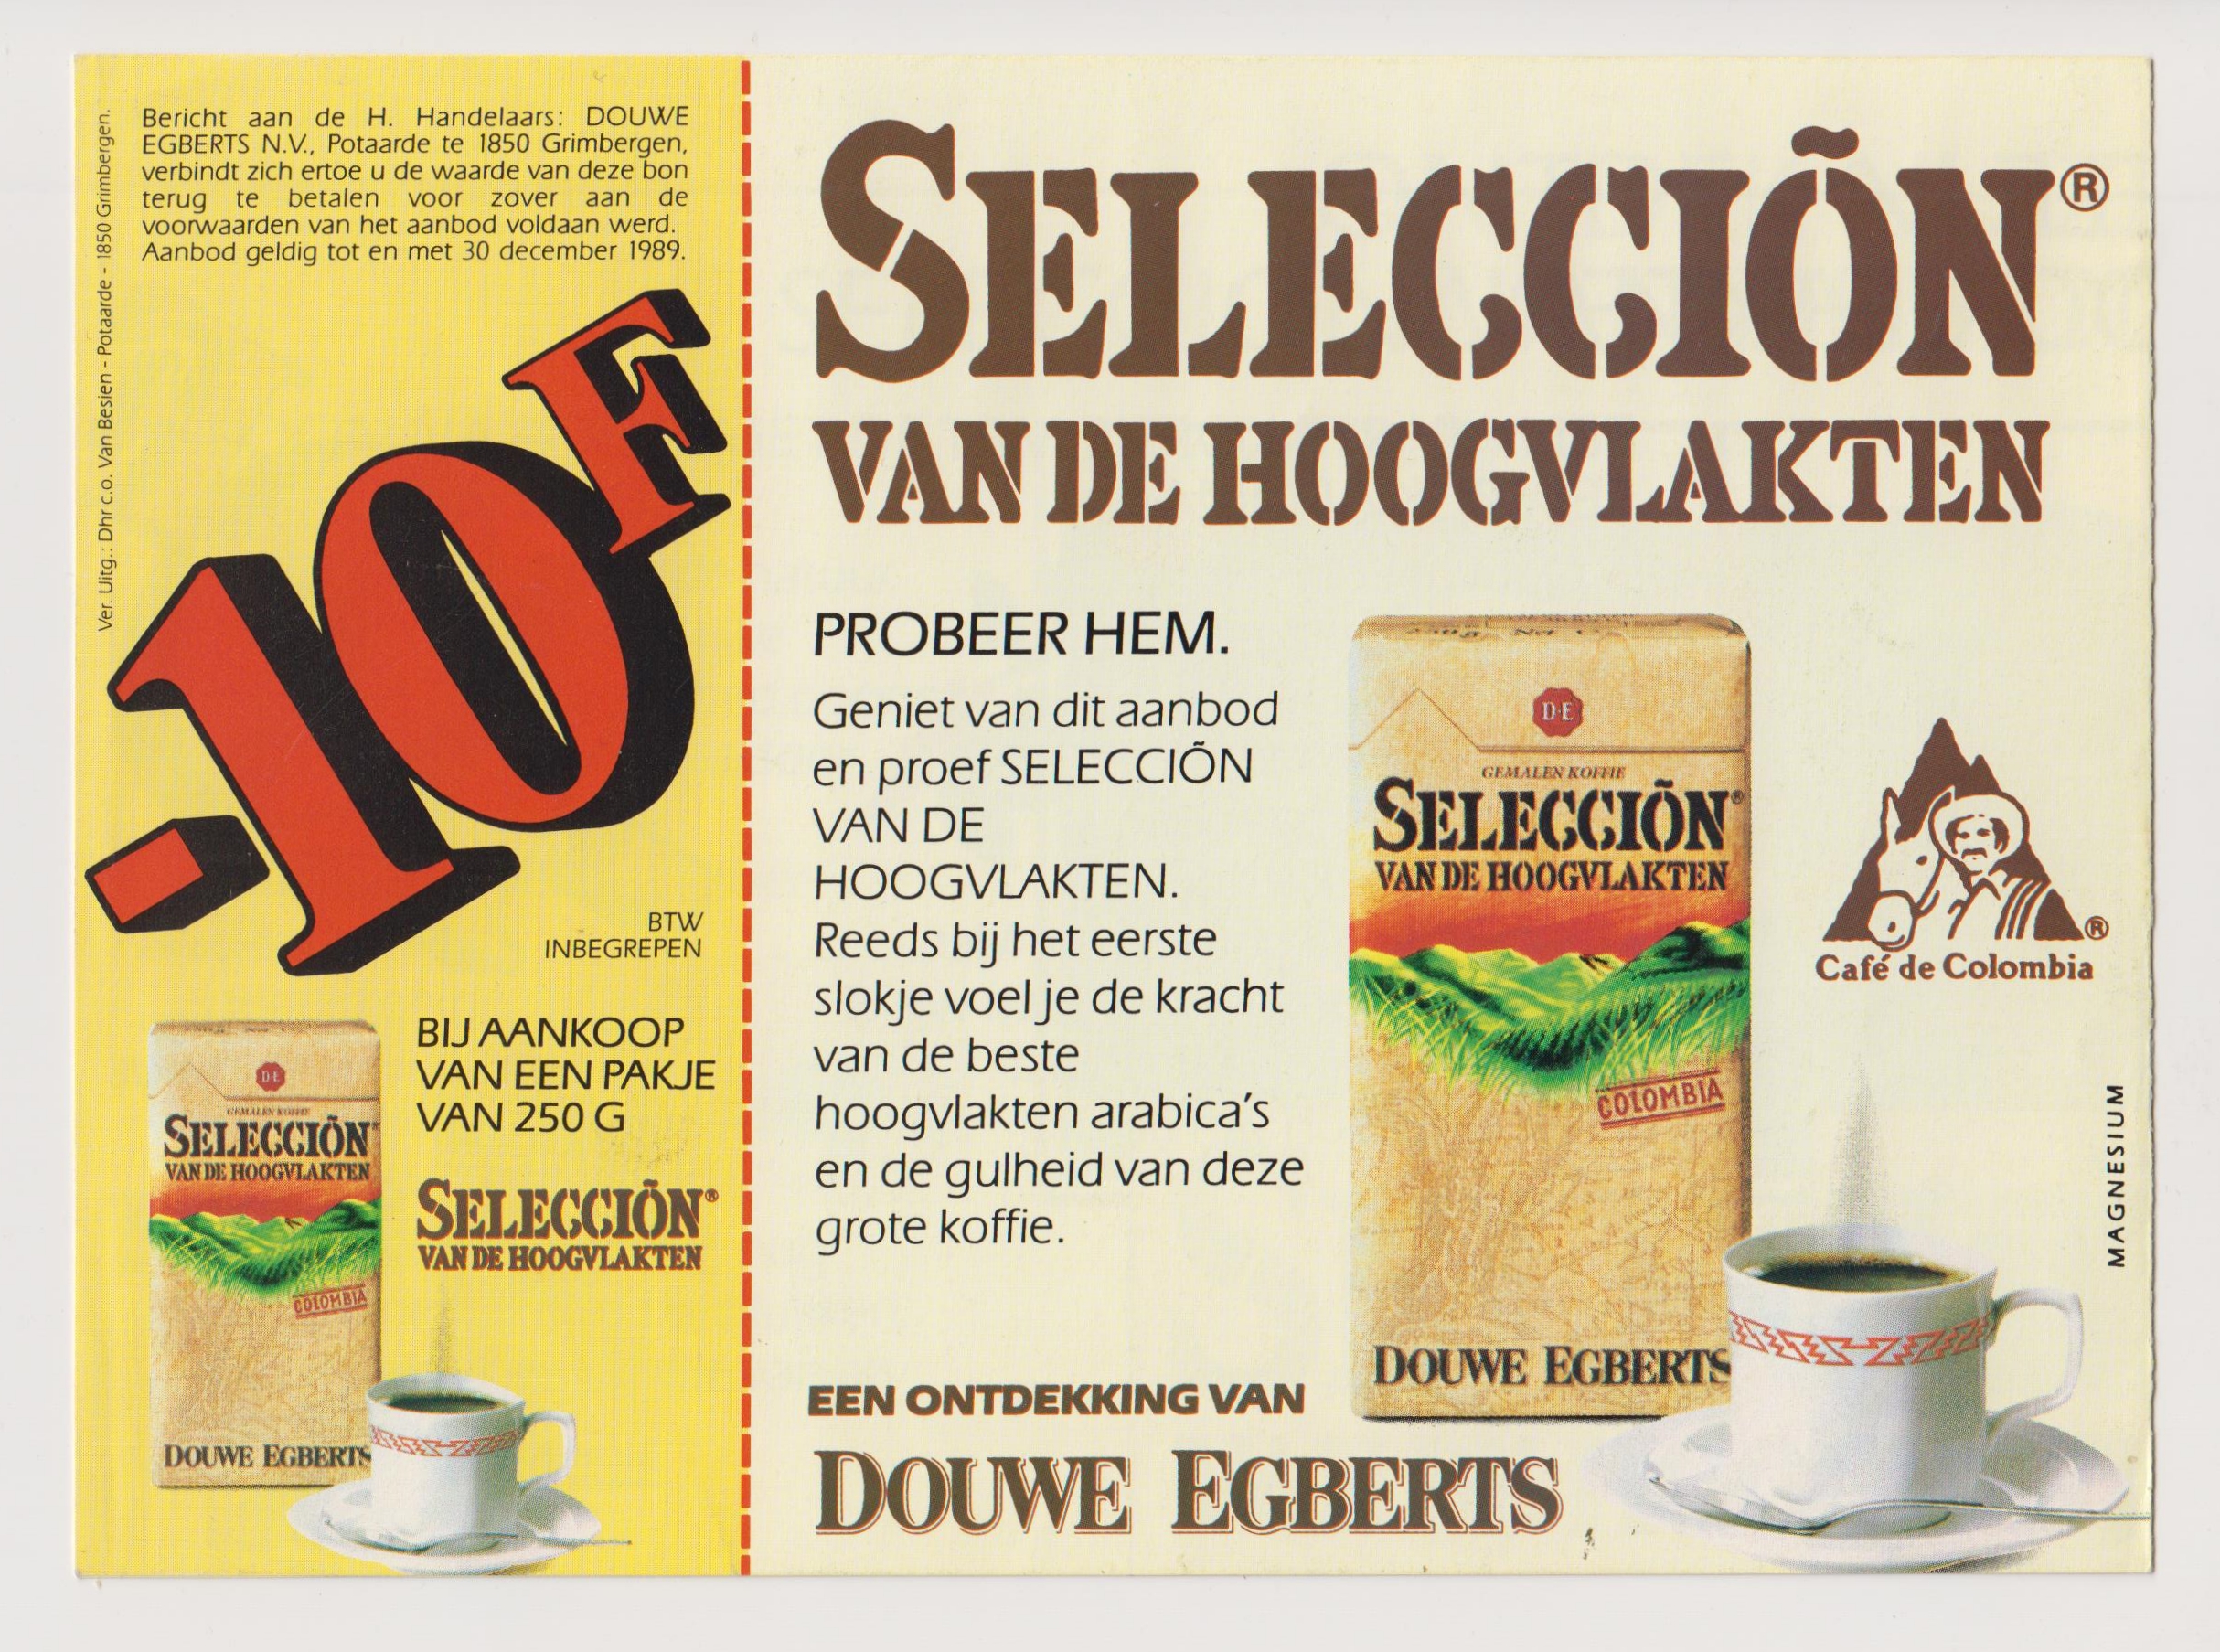 Reclame uit 1989 voor een nieuwe koffiesmaak van Douwe Egberts. Collectie Jacobs Douwe Egberts, Brussel.